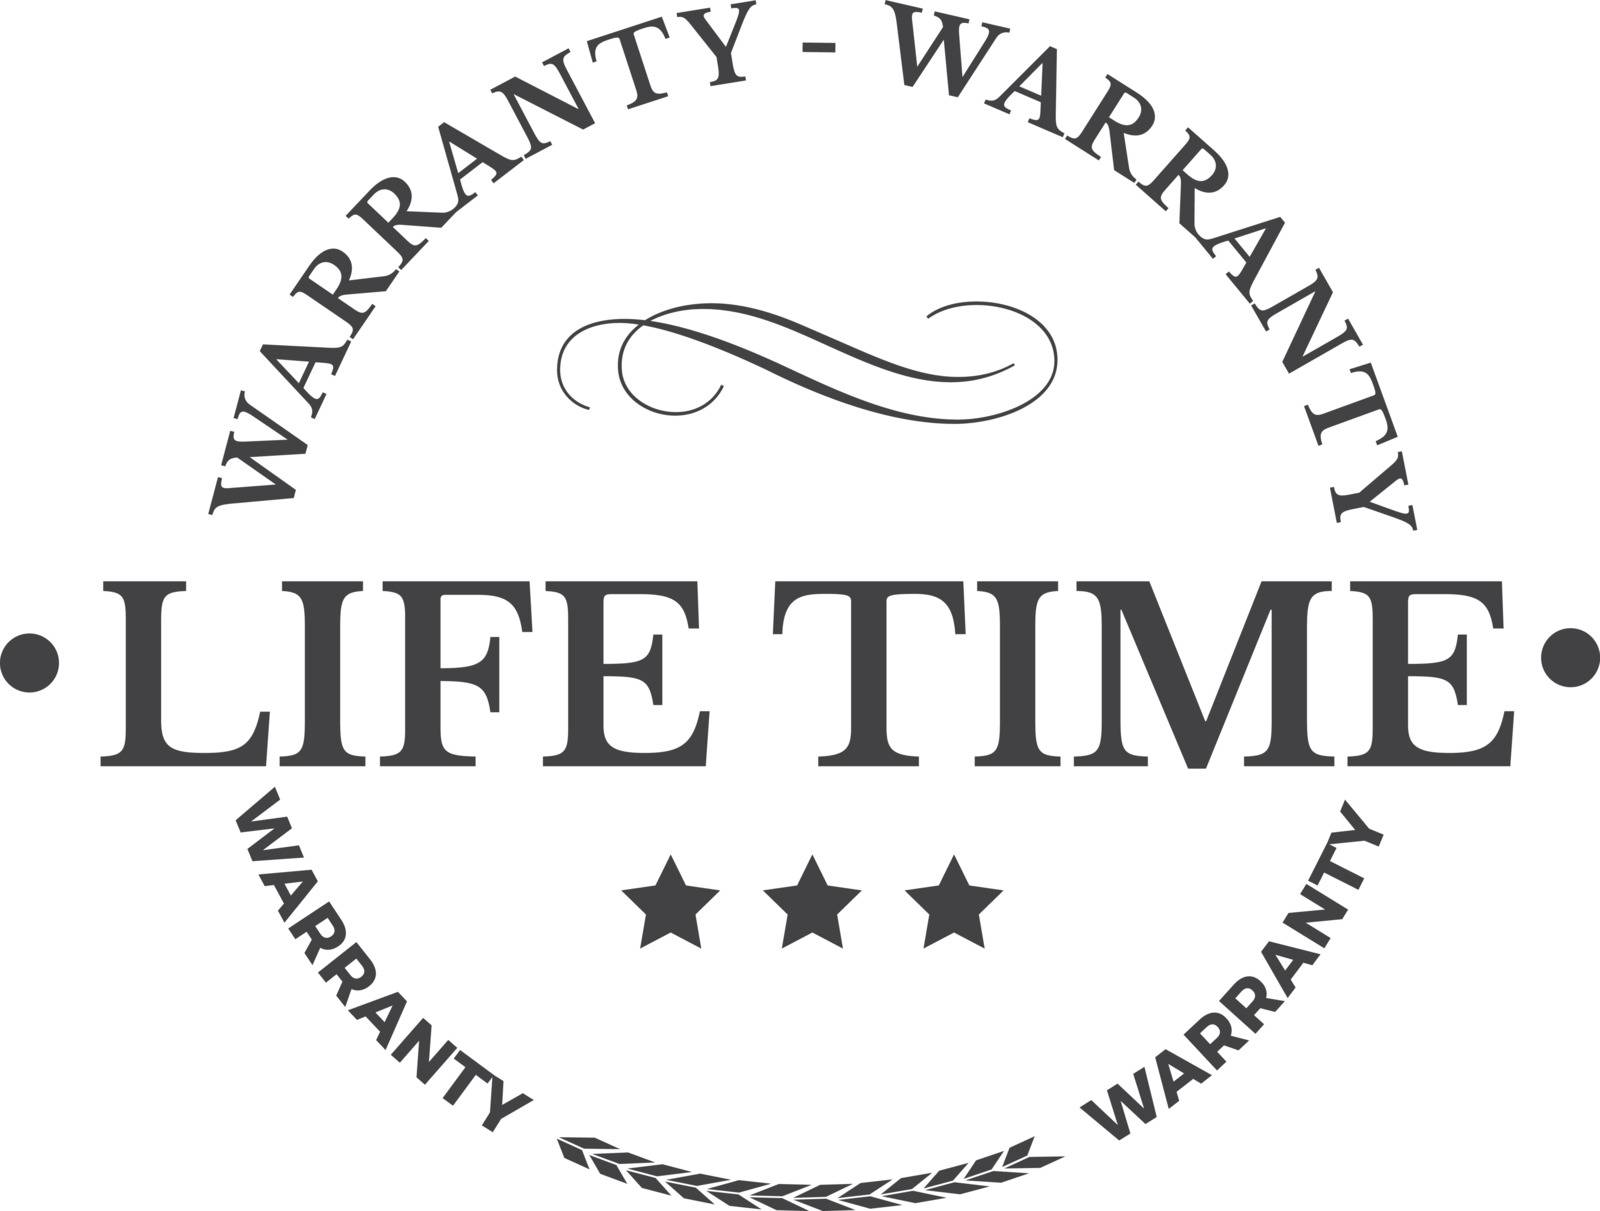 lifetime warranty illustration design stamp